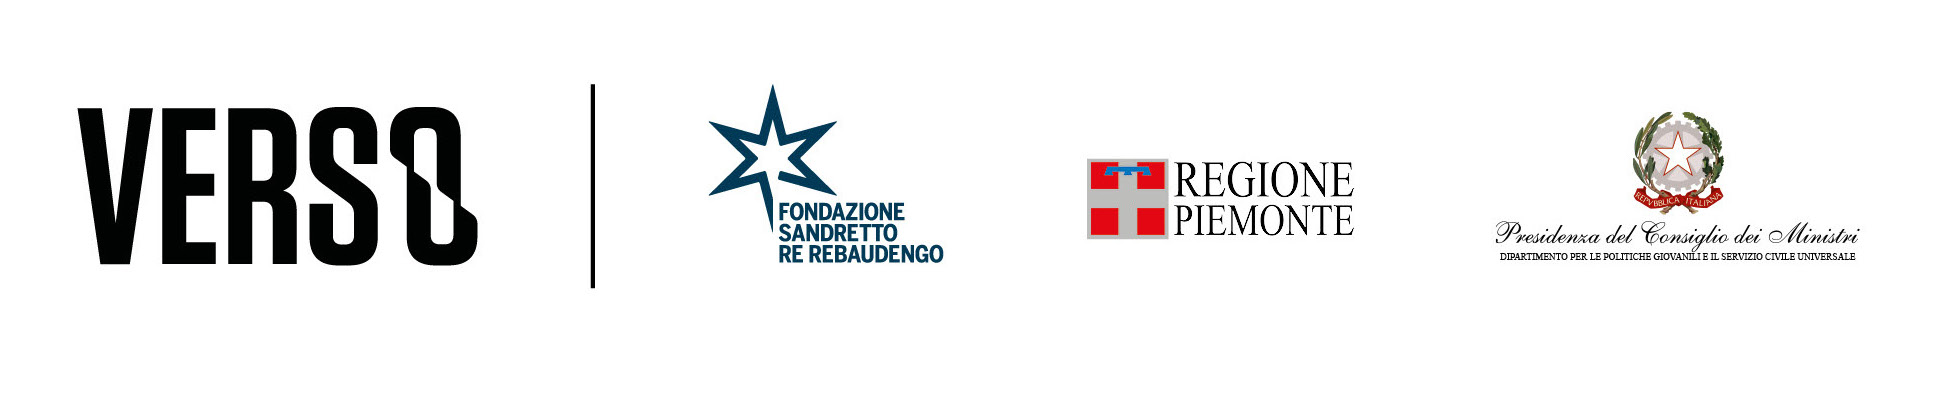 Projects Fondazione Sandretto Re Rebaudengo